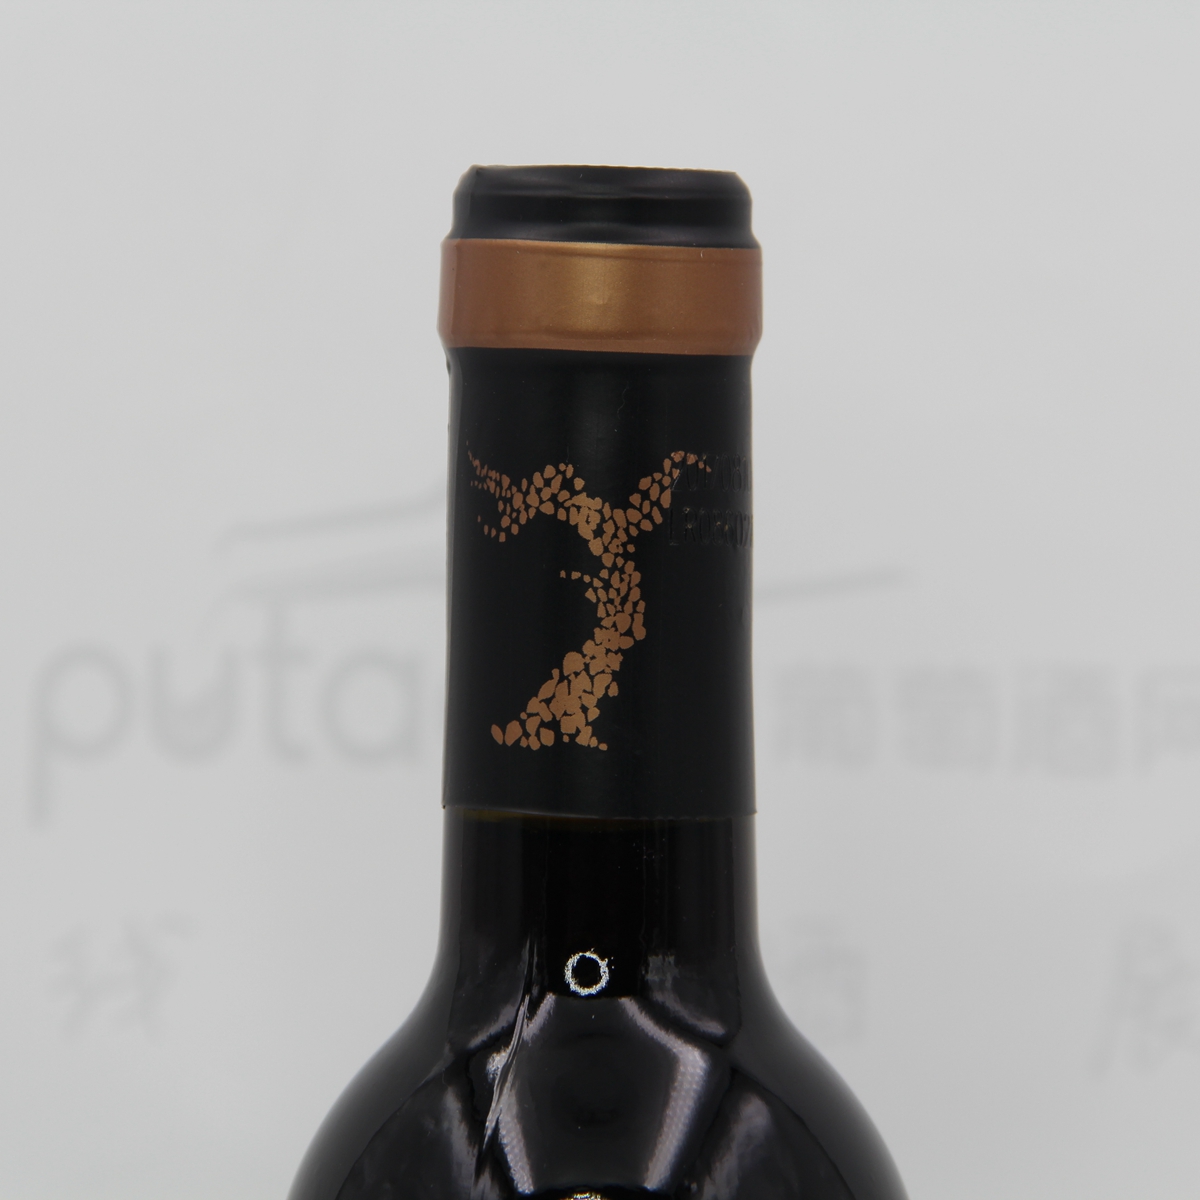 中国新疆产区沙地酒庄 赤霞珠老藤橡木桶干红葡萄酒